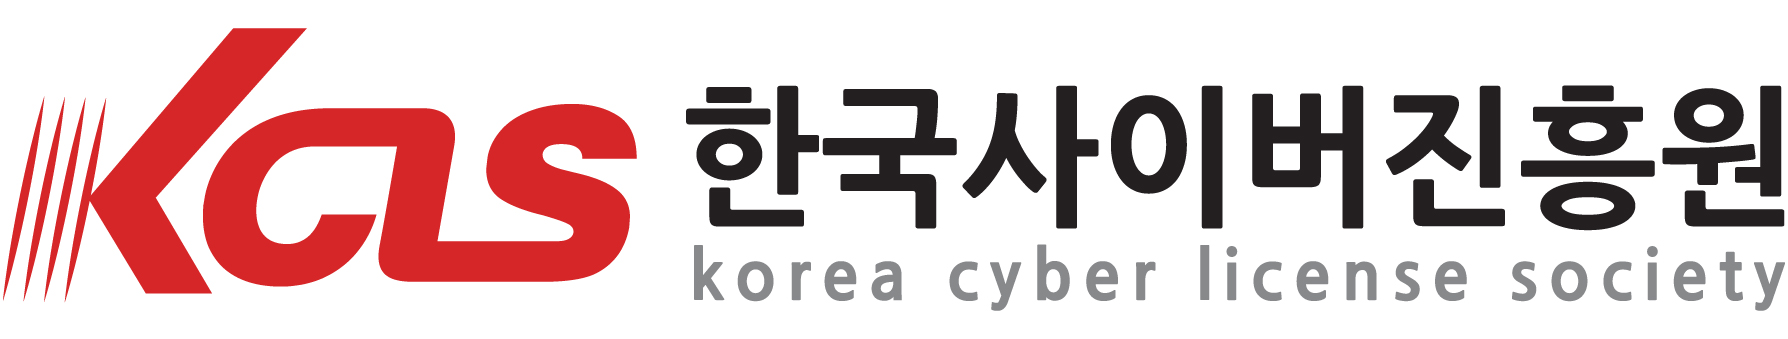 한국사이버진흥원